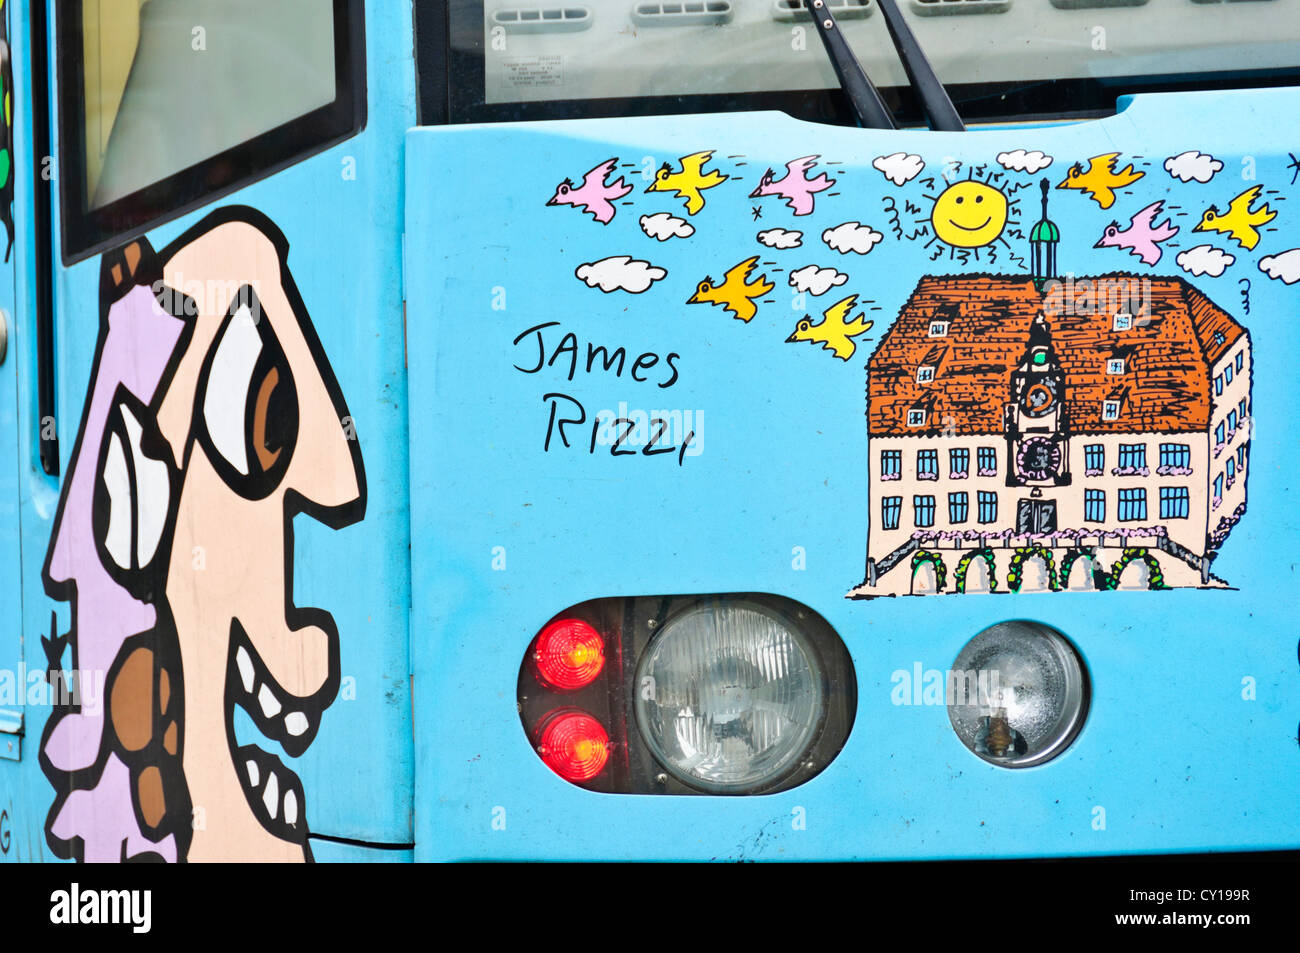 Rizzi-Bahn, wagons de chemin de lumière pour la ville de Heilbronn 2002 conçu par l'artiste pop James Rizzi, Heilbronn Allemagne Banque D'Images